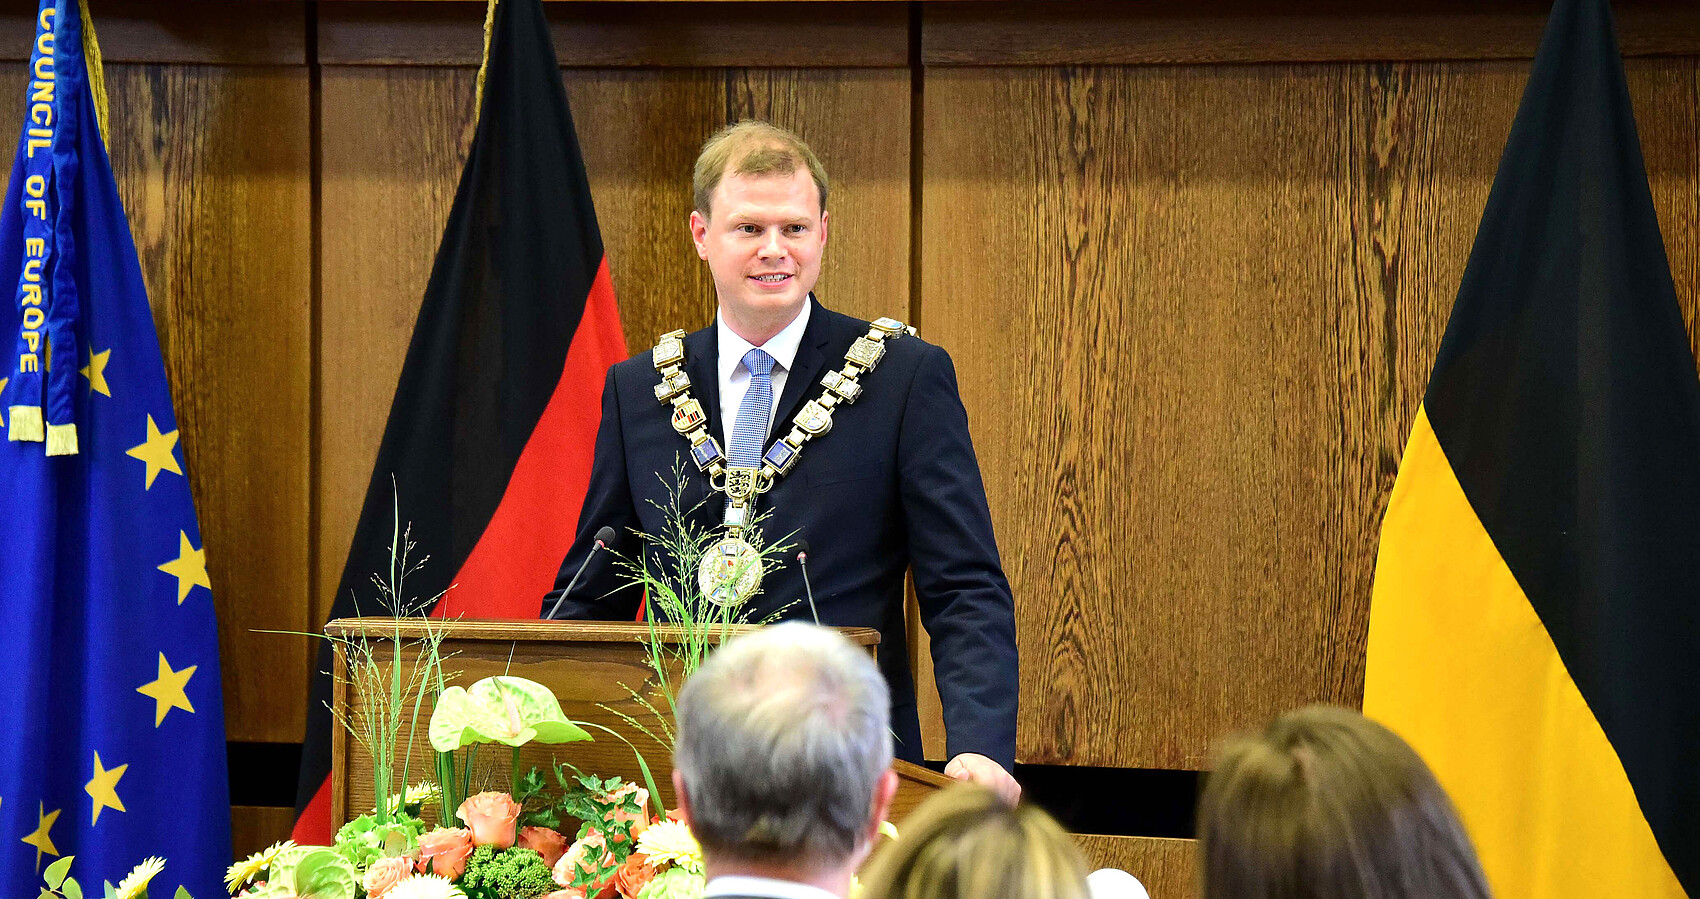 Michael Salomo wird feierlich in sein Amt als neuer Oberbürgermeister der Großen Kreisstadt Heidenheim an der Brenz eingesetzt